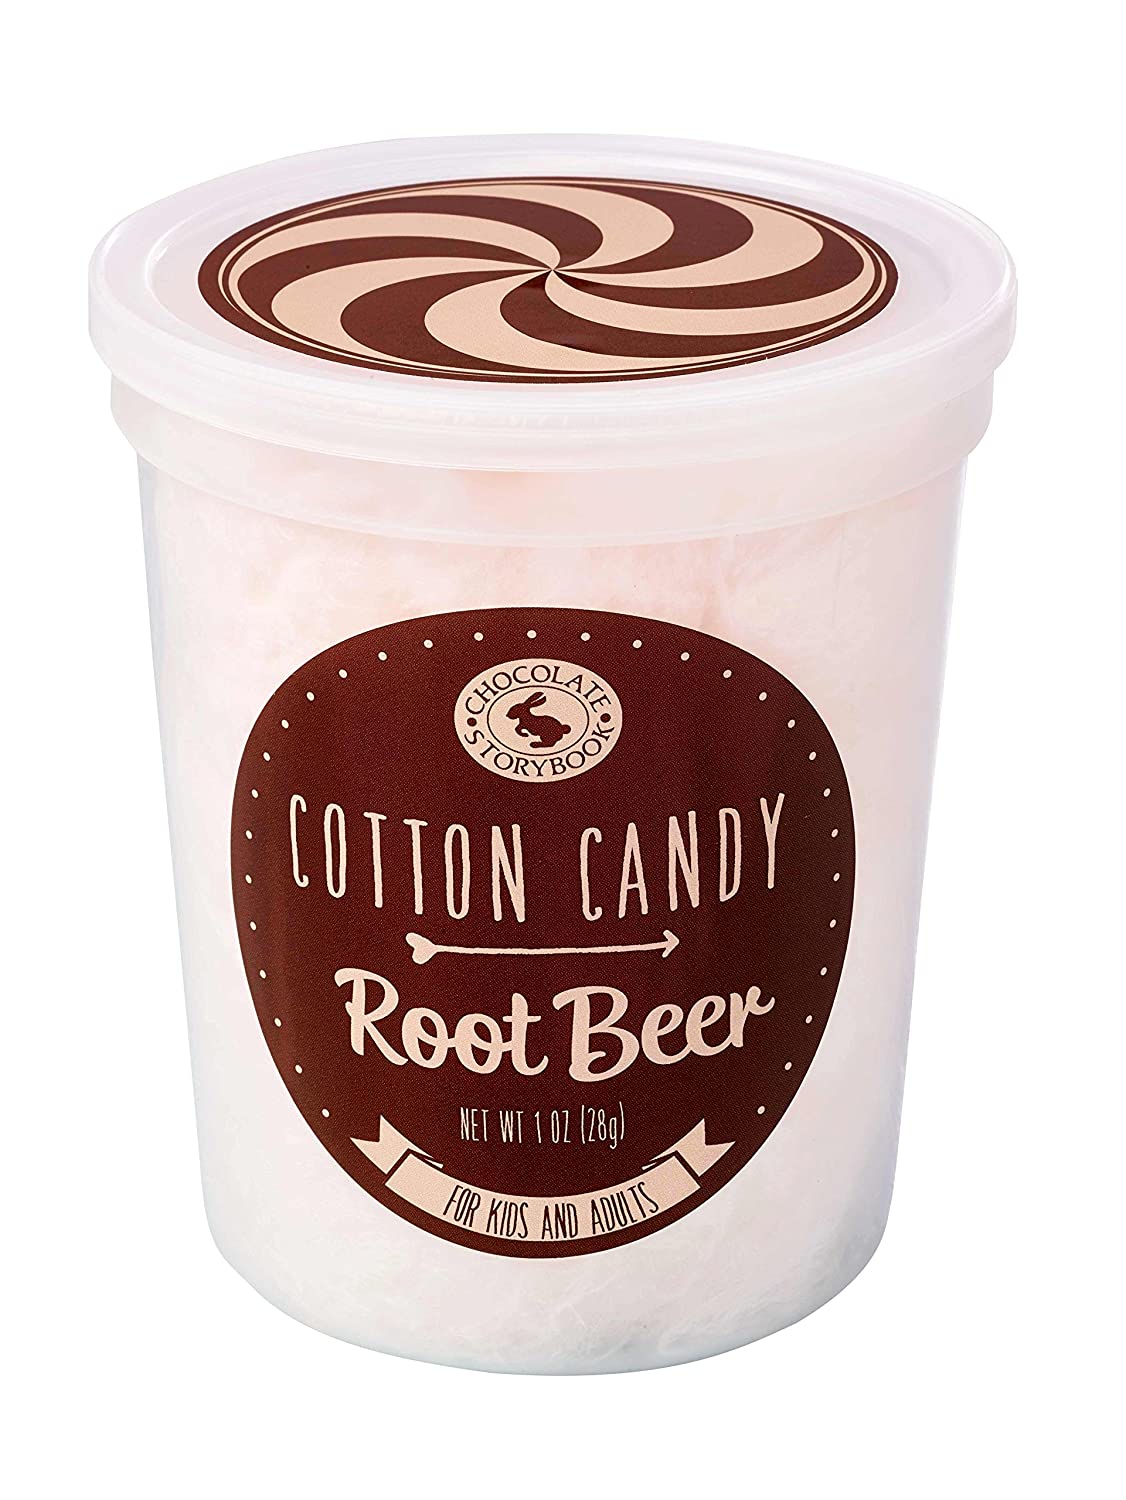 Unique Flavored Cotton Candy